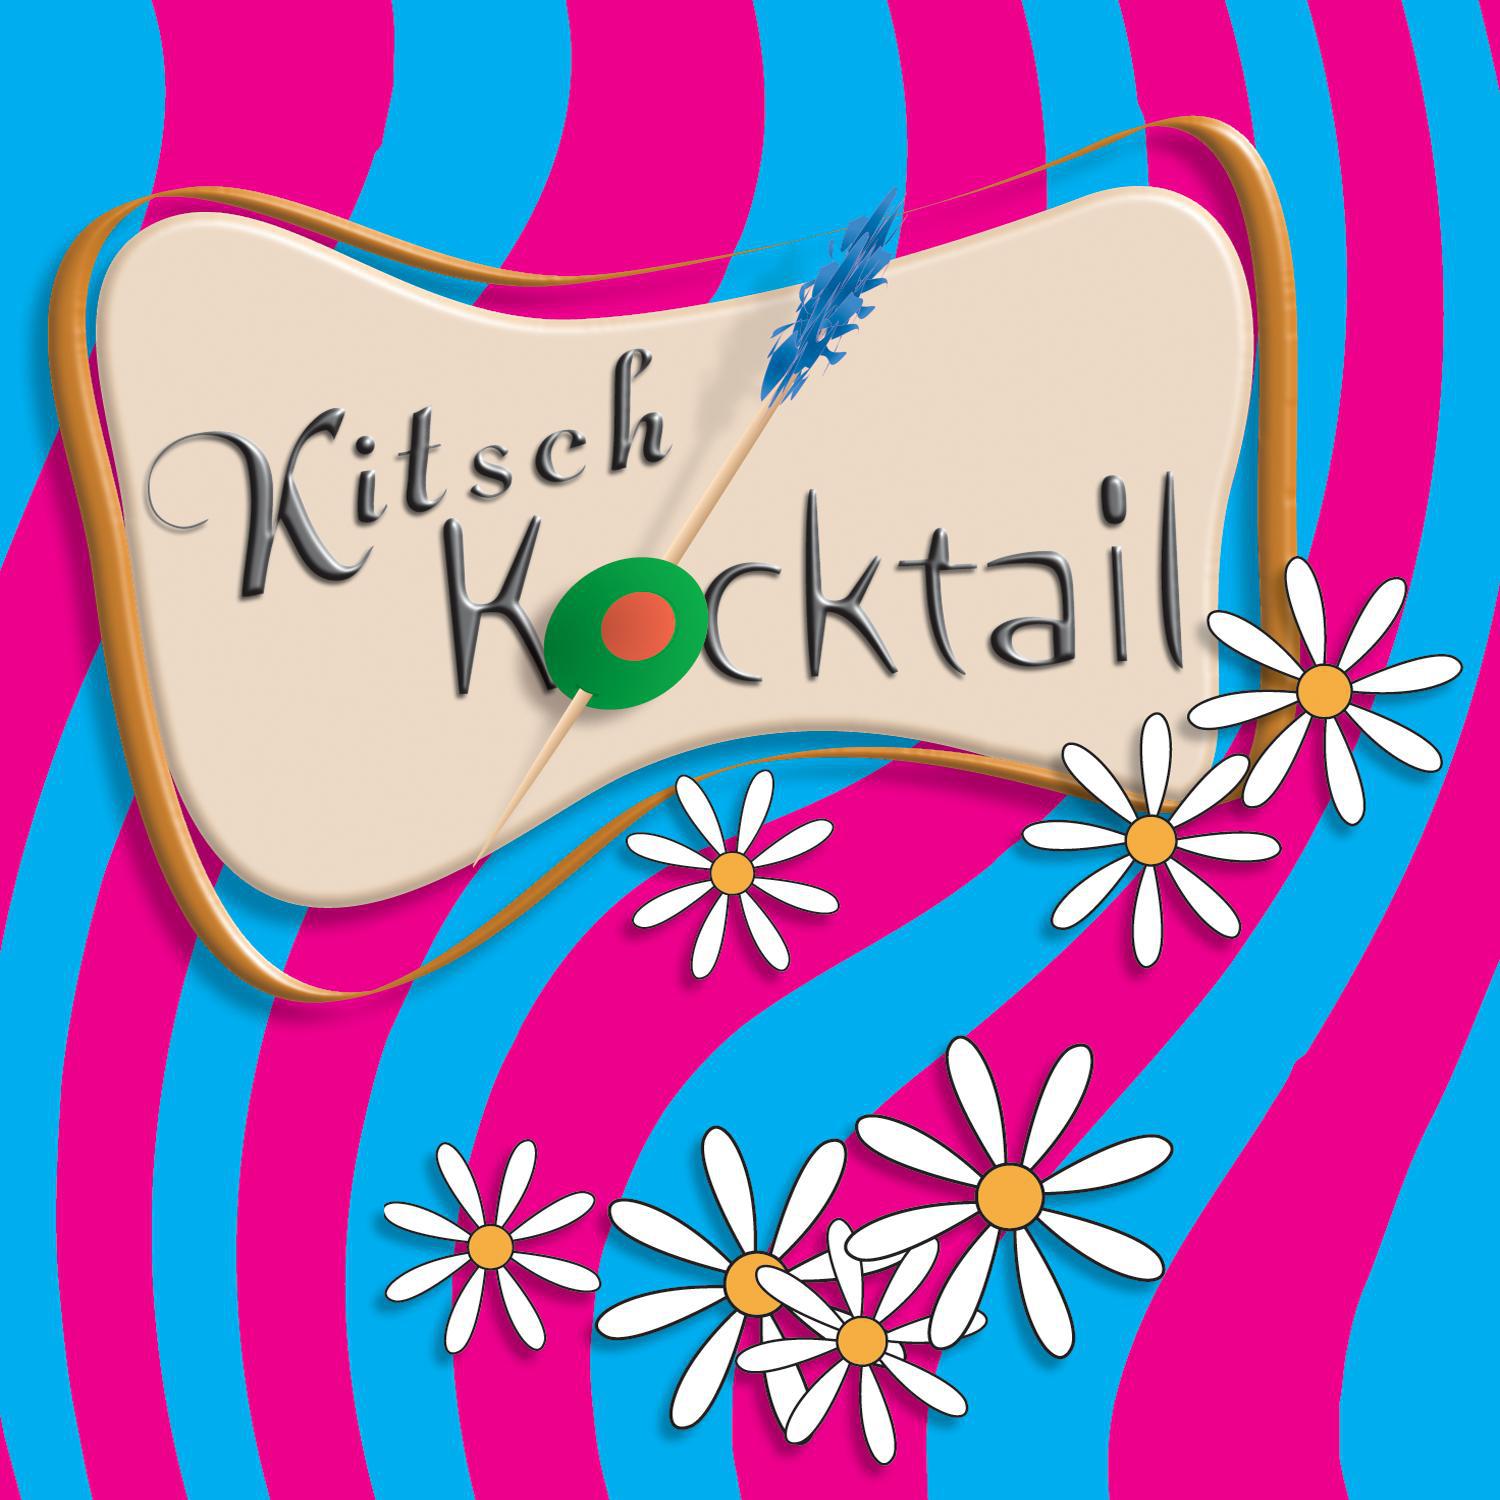 Kitsch Kocktail